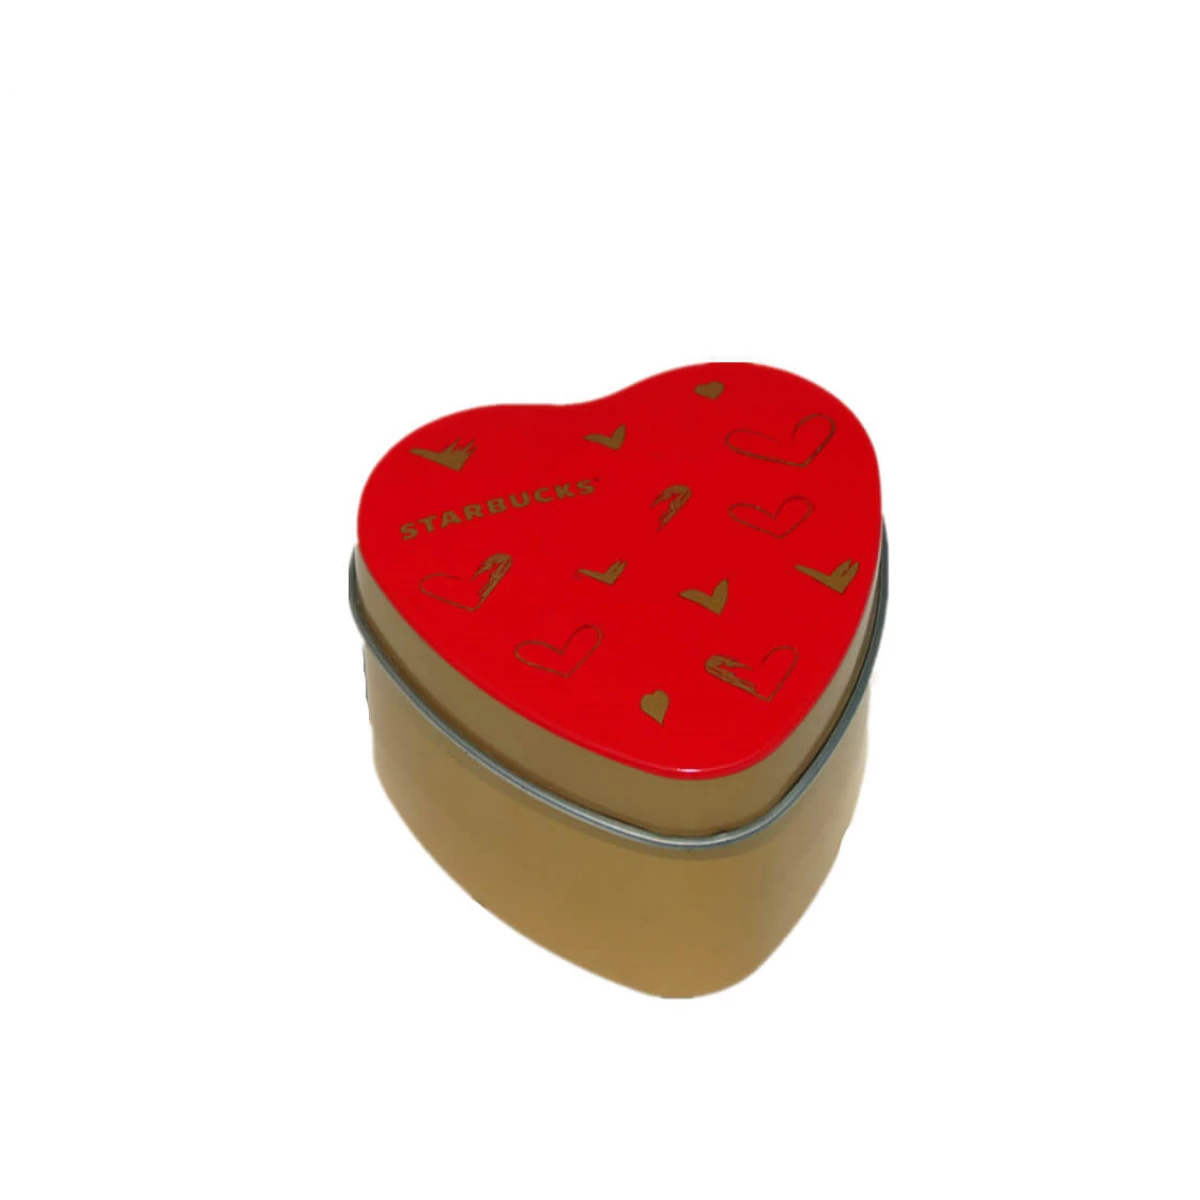 China heart shaped iron box Manufacturers, Factory - Buy heart shaped iron box at Good Price - Haohang